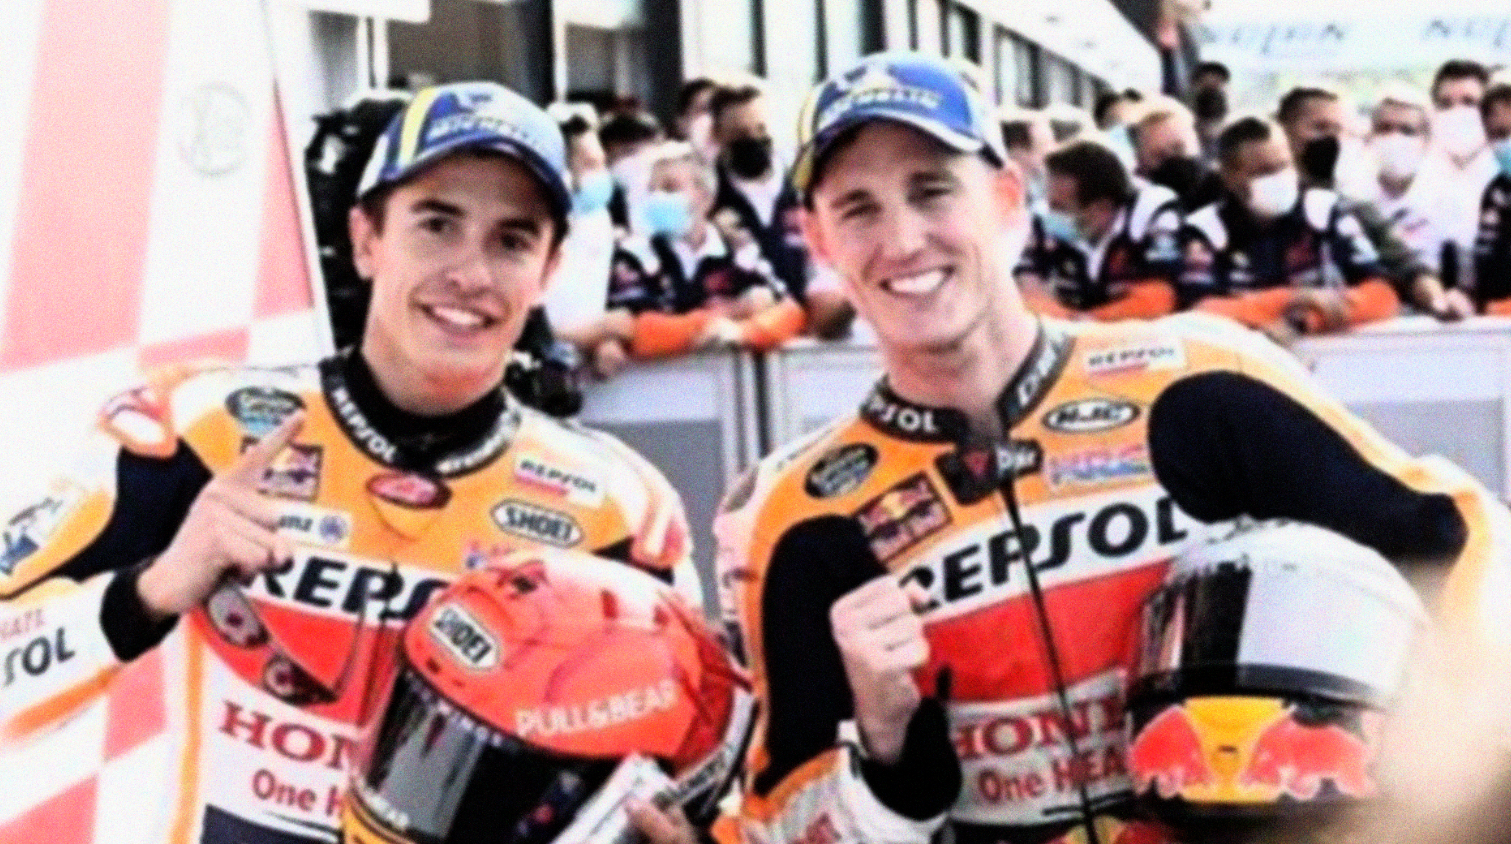 Marc Marquez dan Pol Espargaro saat tampil di MotoGP. (Foto: Istimewa)